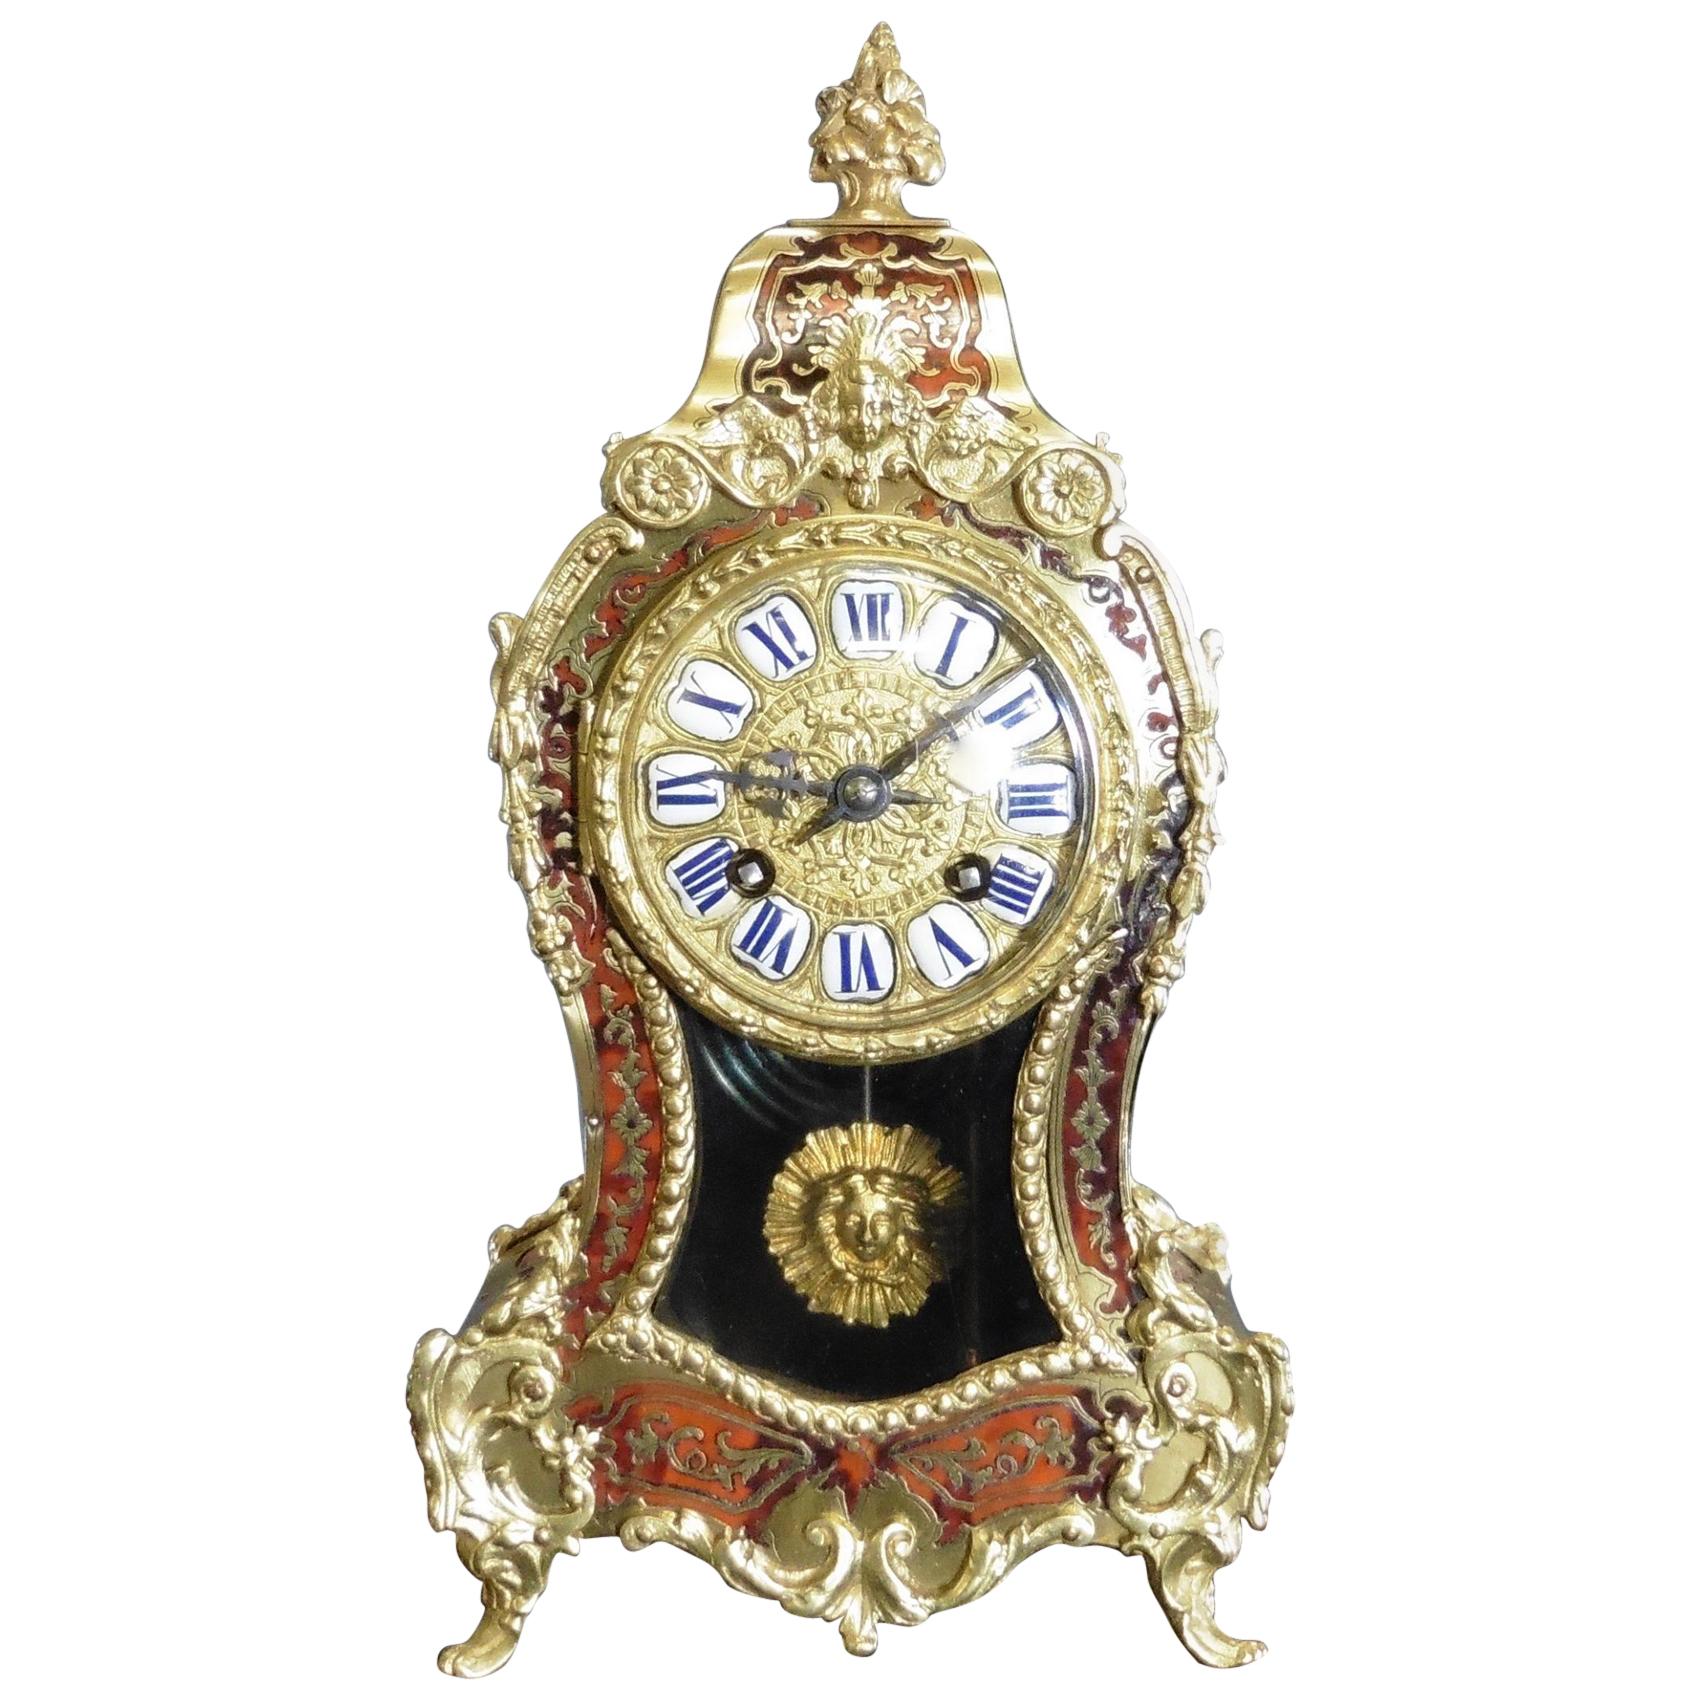 French Tortoiseshell Boulle Mantel Clock